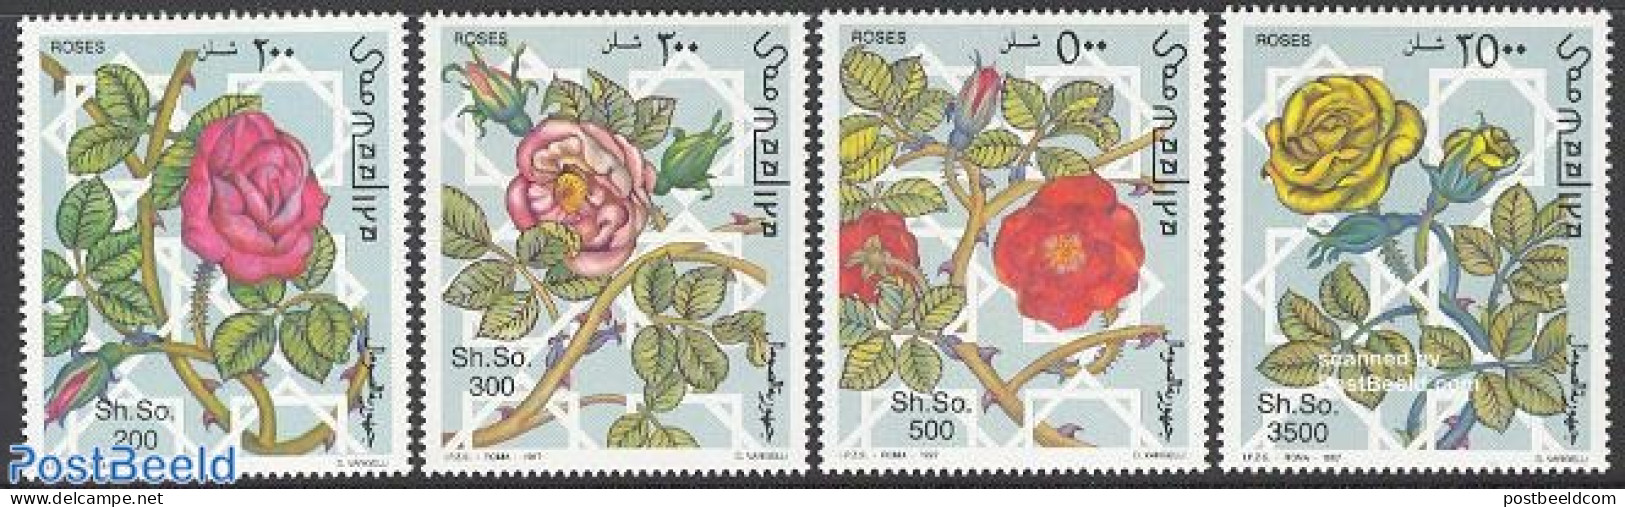 Somalia 1997 Roses 4v, Mint NH, Nature - Flowers & Plants - Roses - Somalië (1960-...)